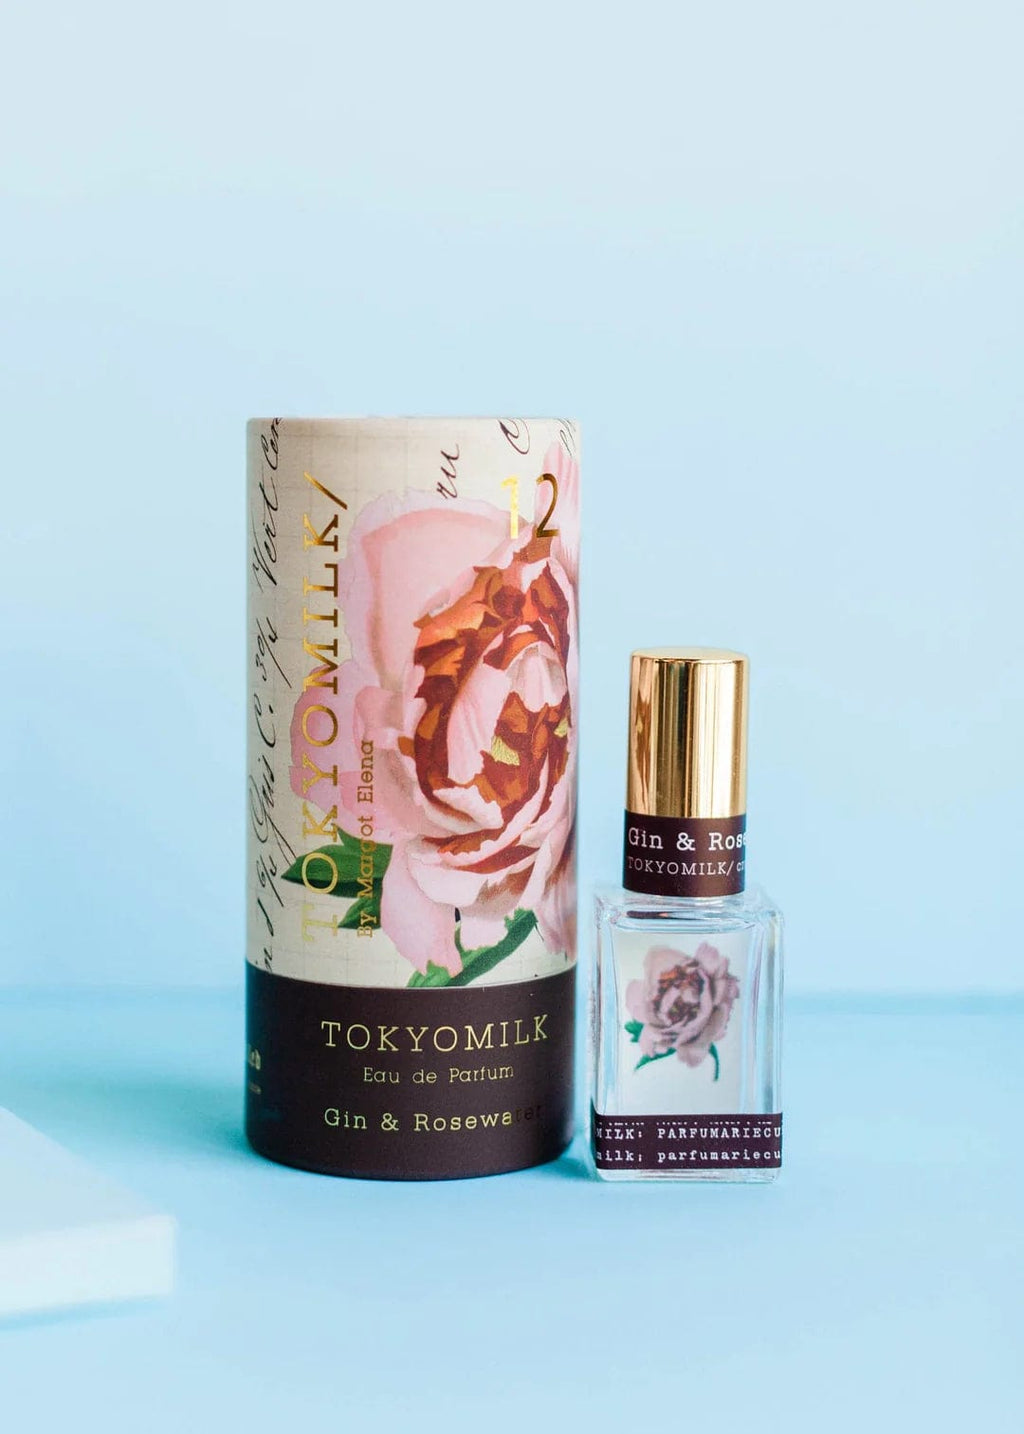 TokyoMilk Perfume Gin & Rosewater Parfum